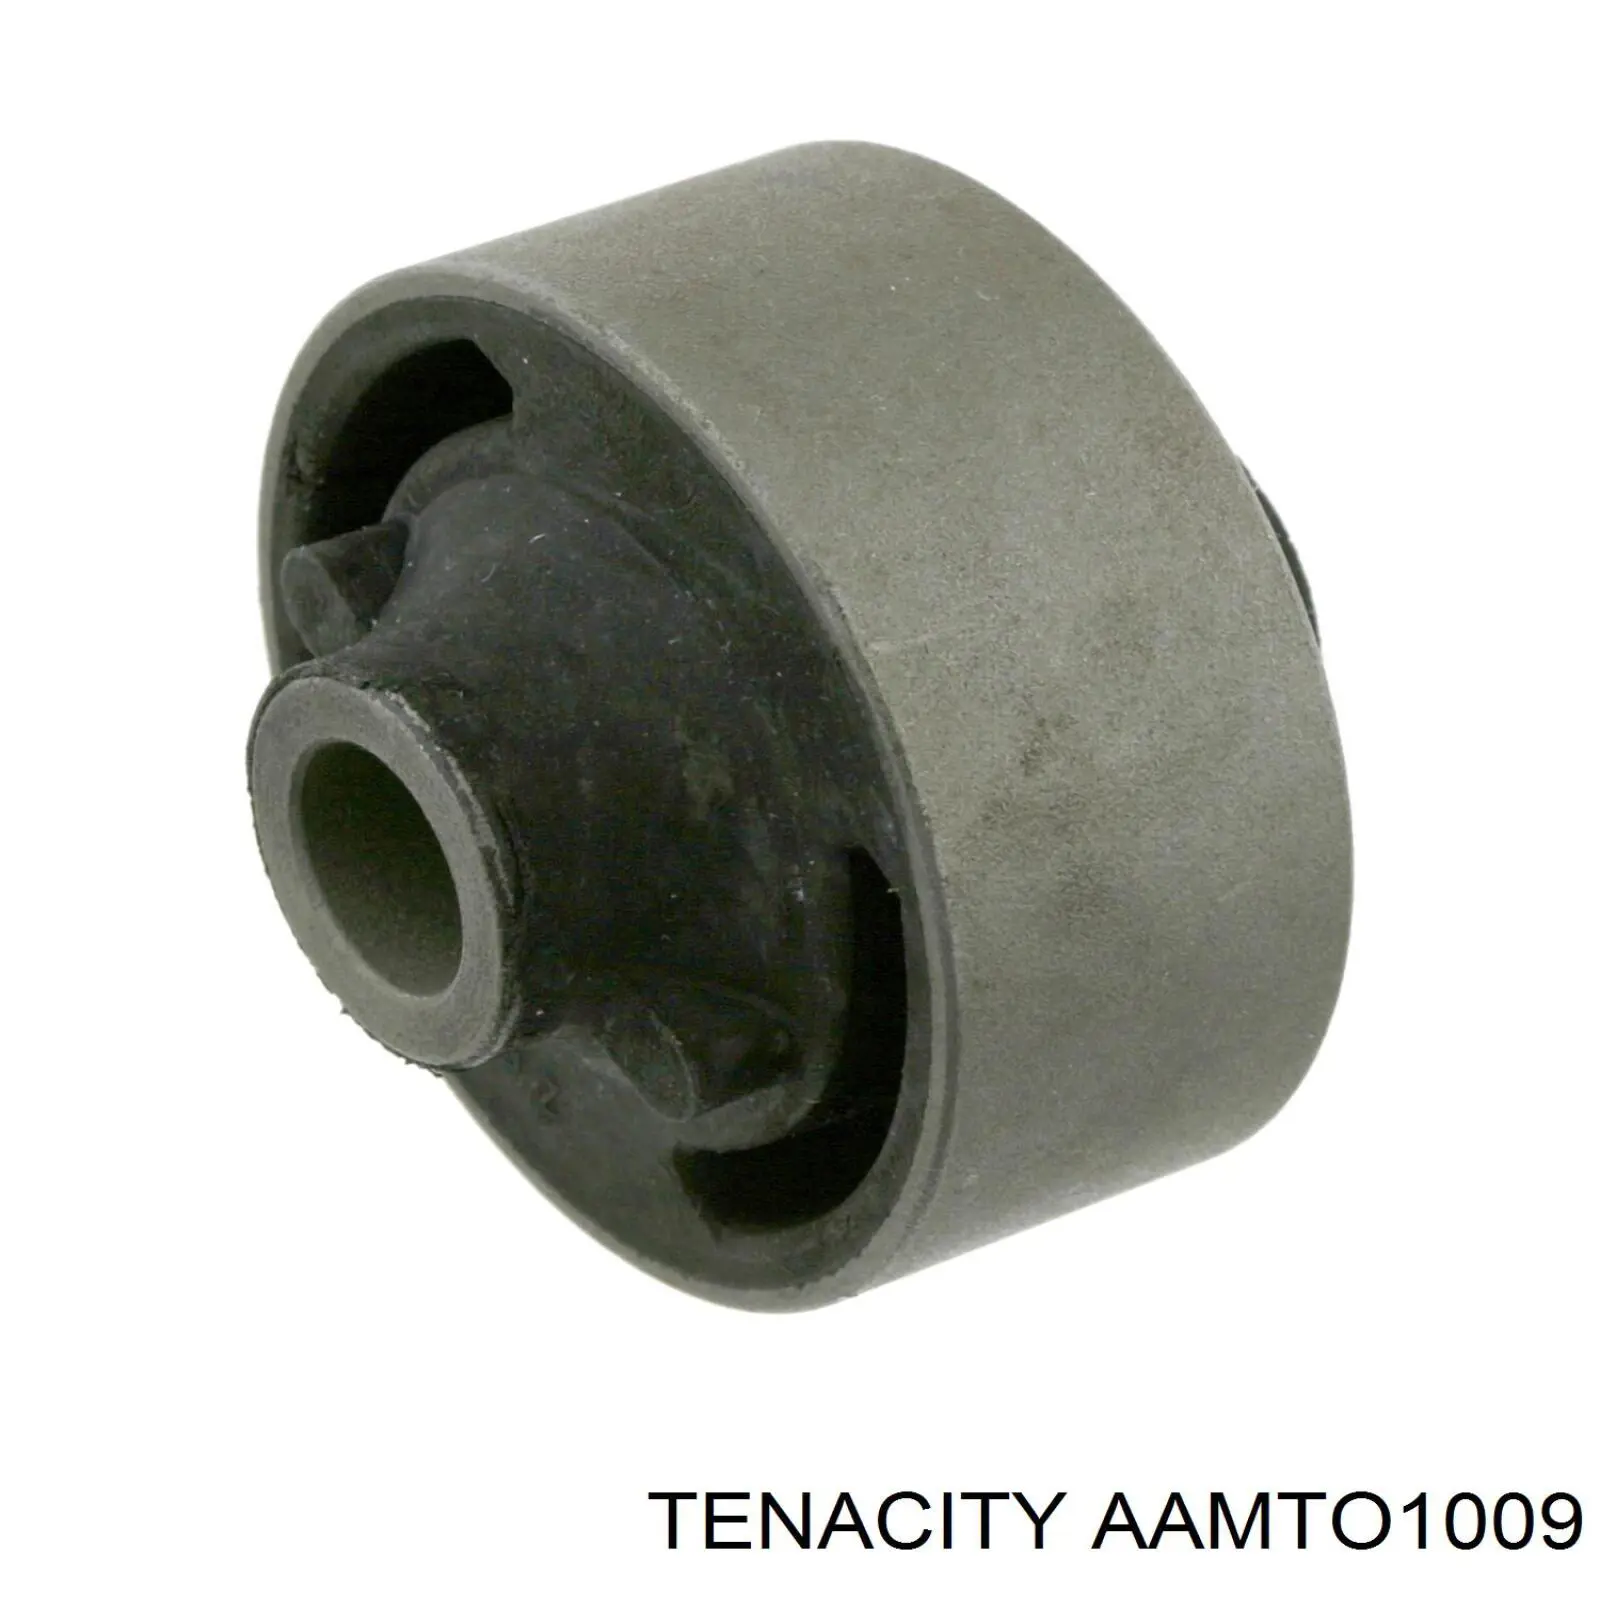 AAMTO1009 Tenacity silentblock de suspensión delantero inferior